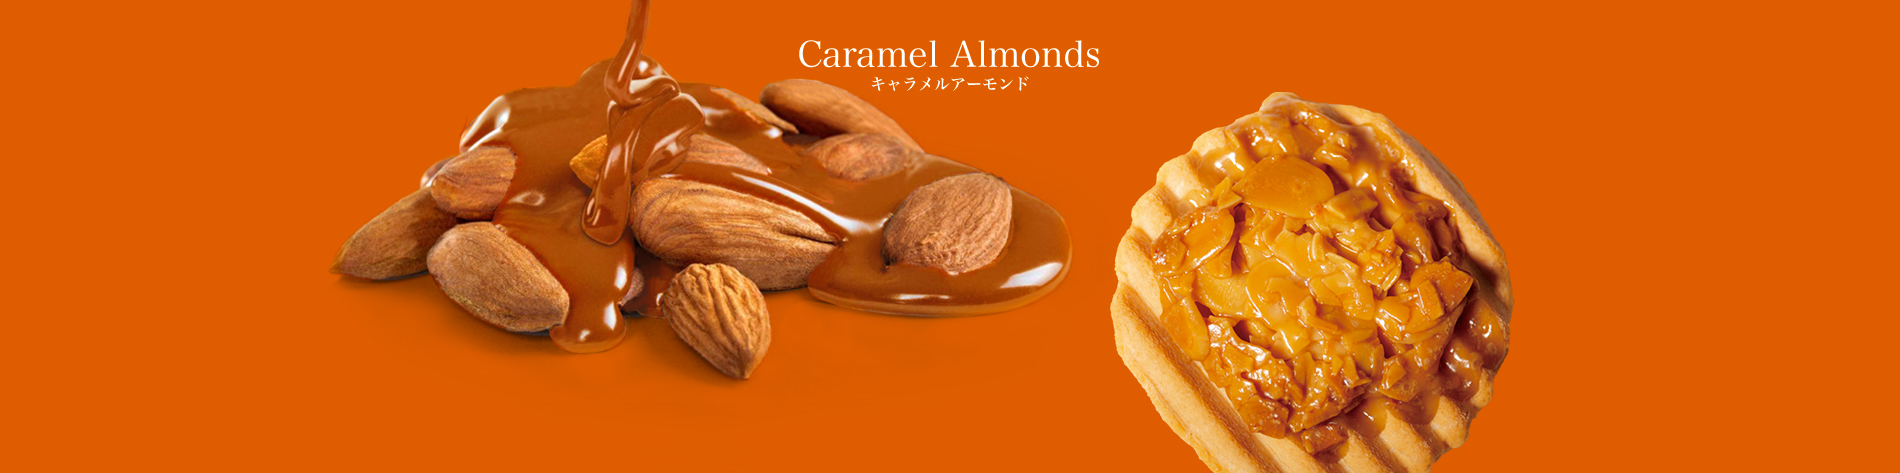 Caramel Almonds キャラメルアーモンド